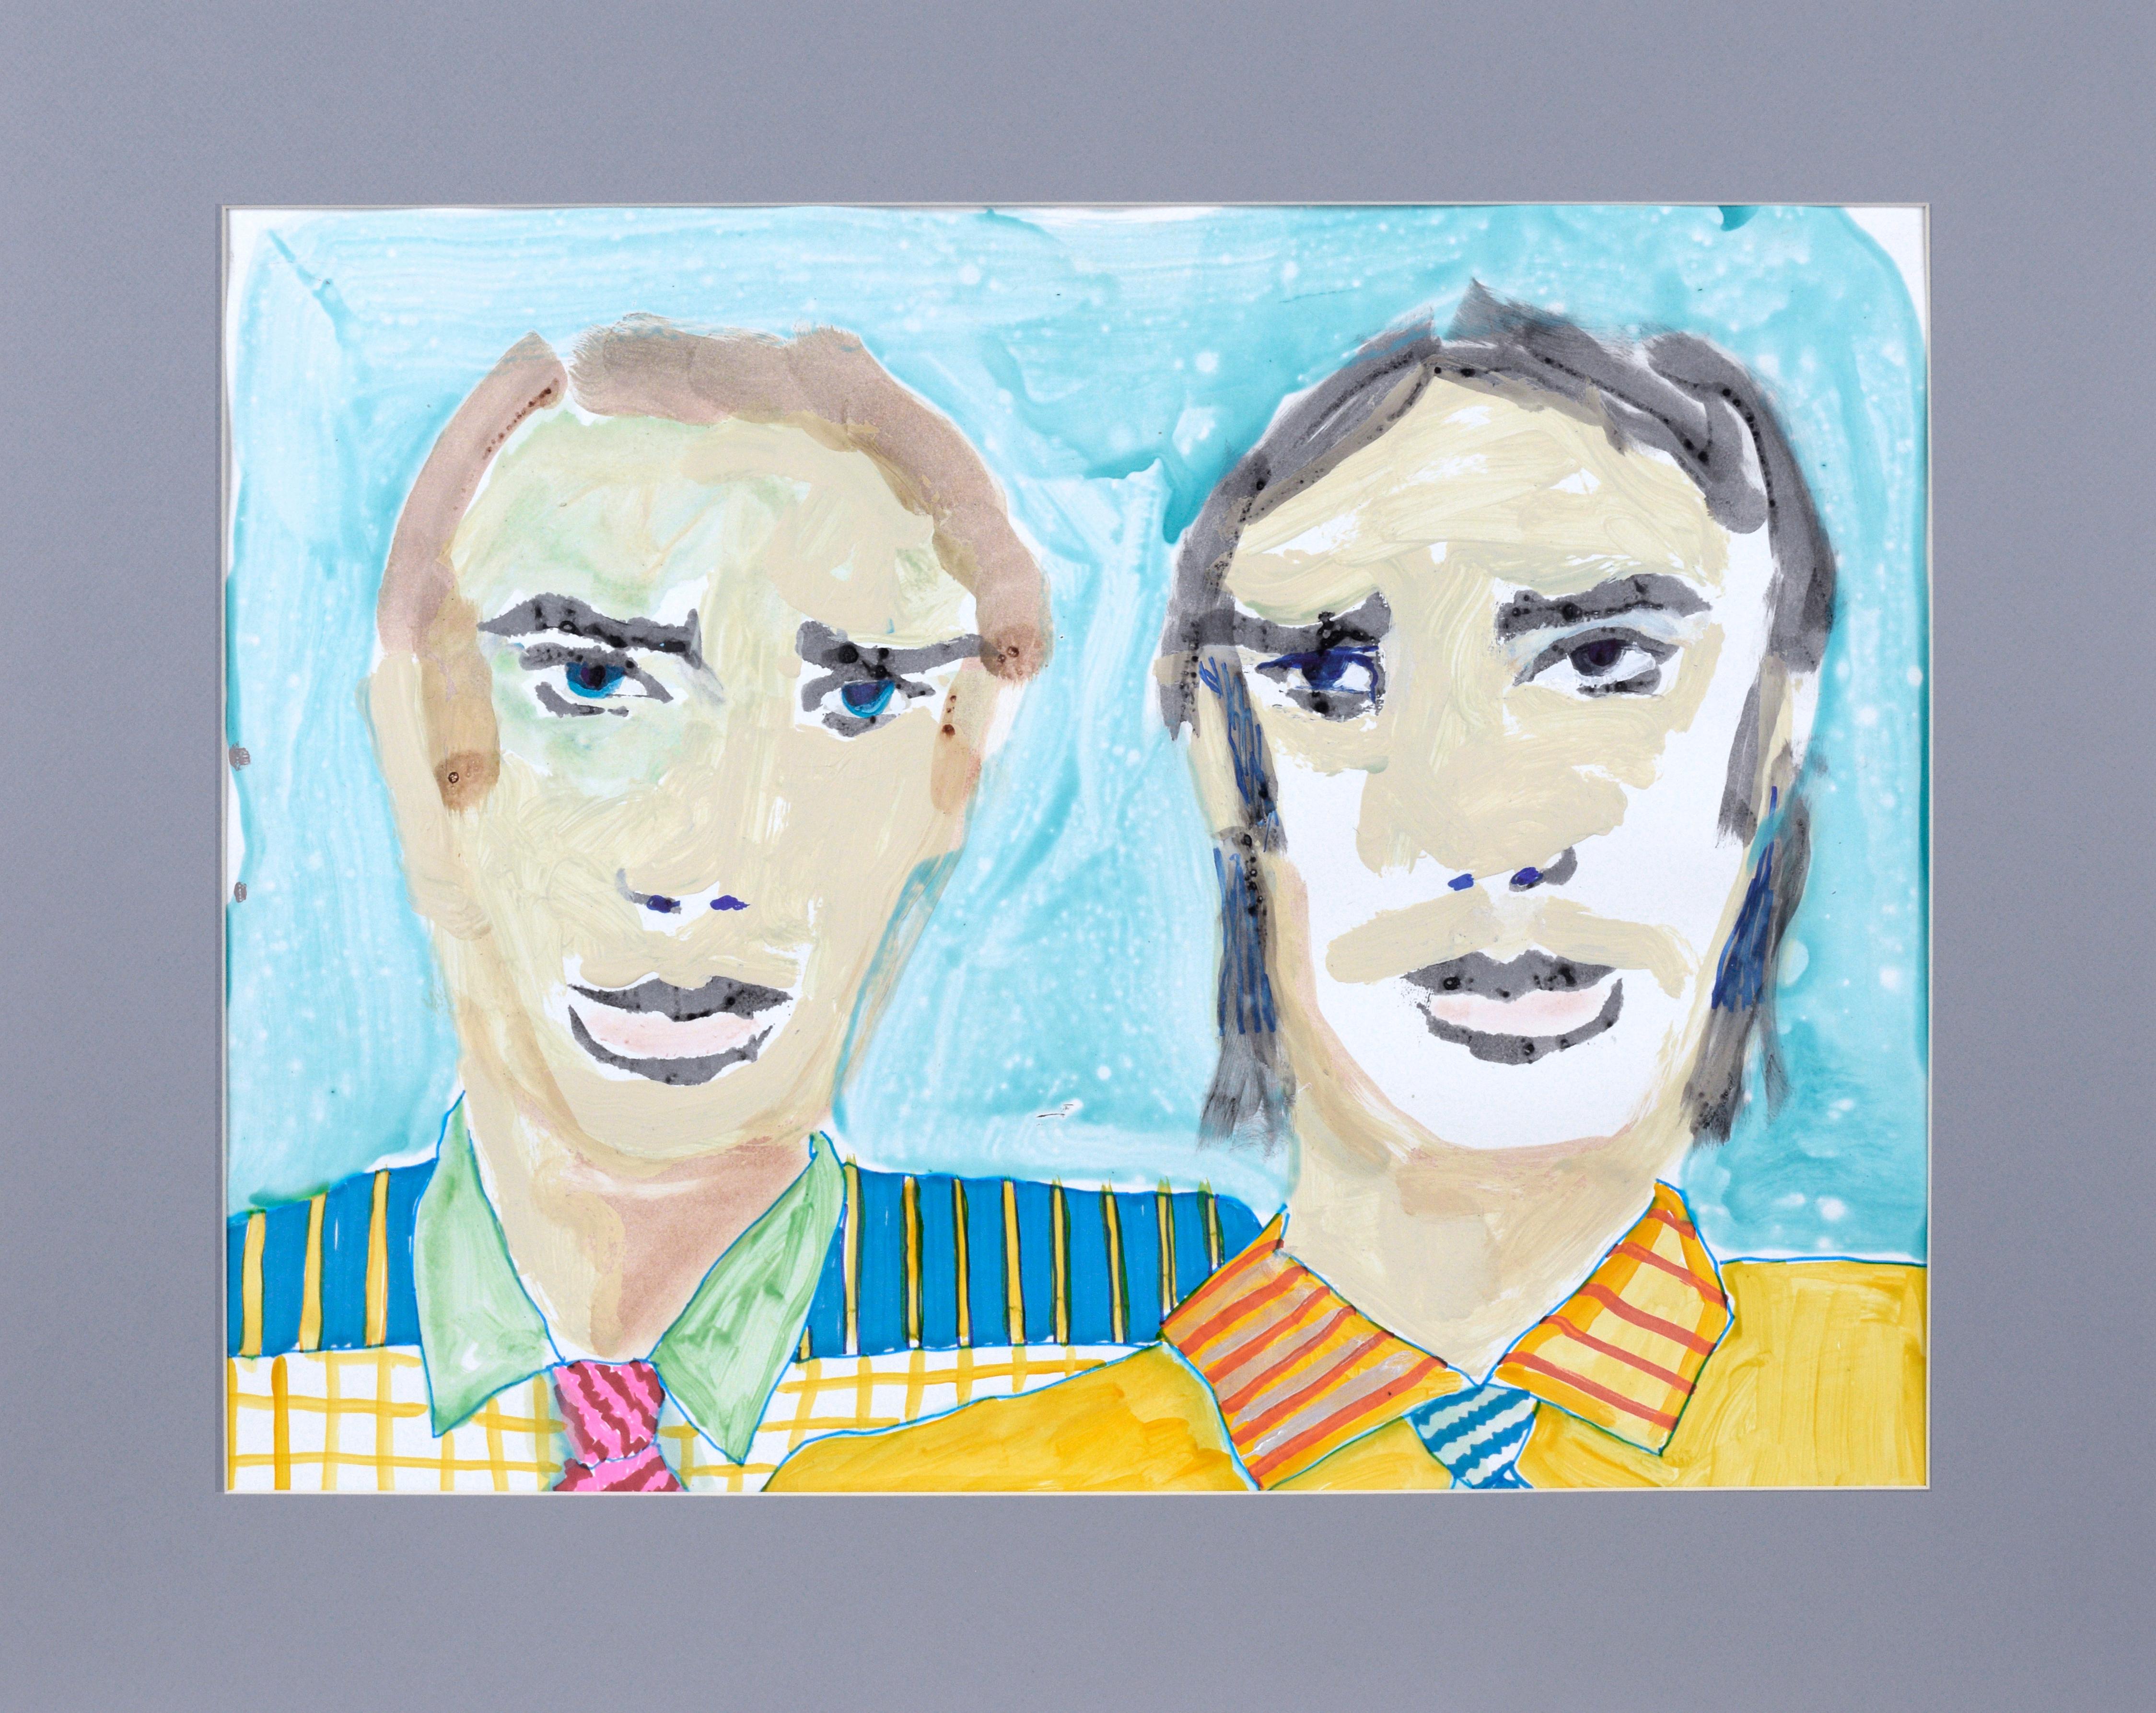 Si Wes Anderson a rencontré Marc Foster Grant - Portraits abstraits sur papier

Portrait de deux hommes par Marc Foster Grant (américain, né en 1947), avec des couleurs vives et des coups de pinceau abstraits. Vêtus de chemises et de cravates à